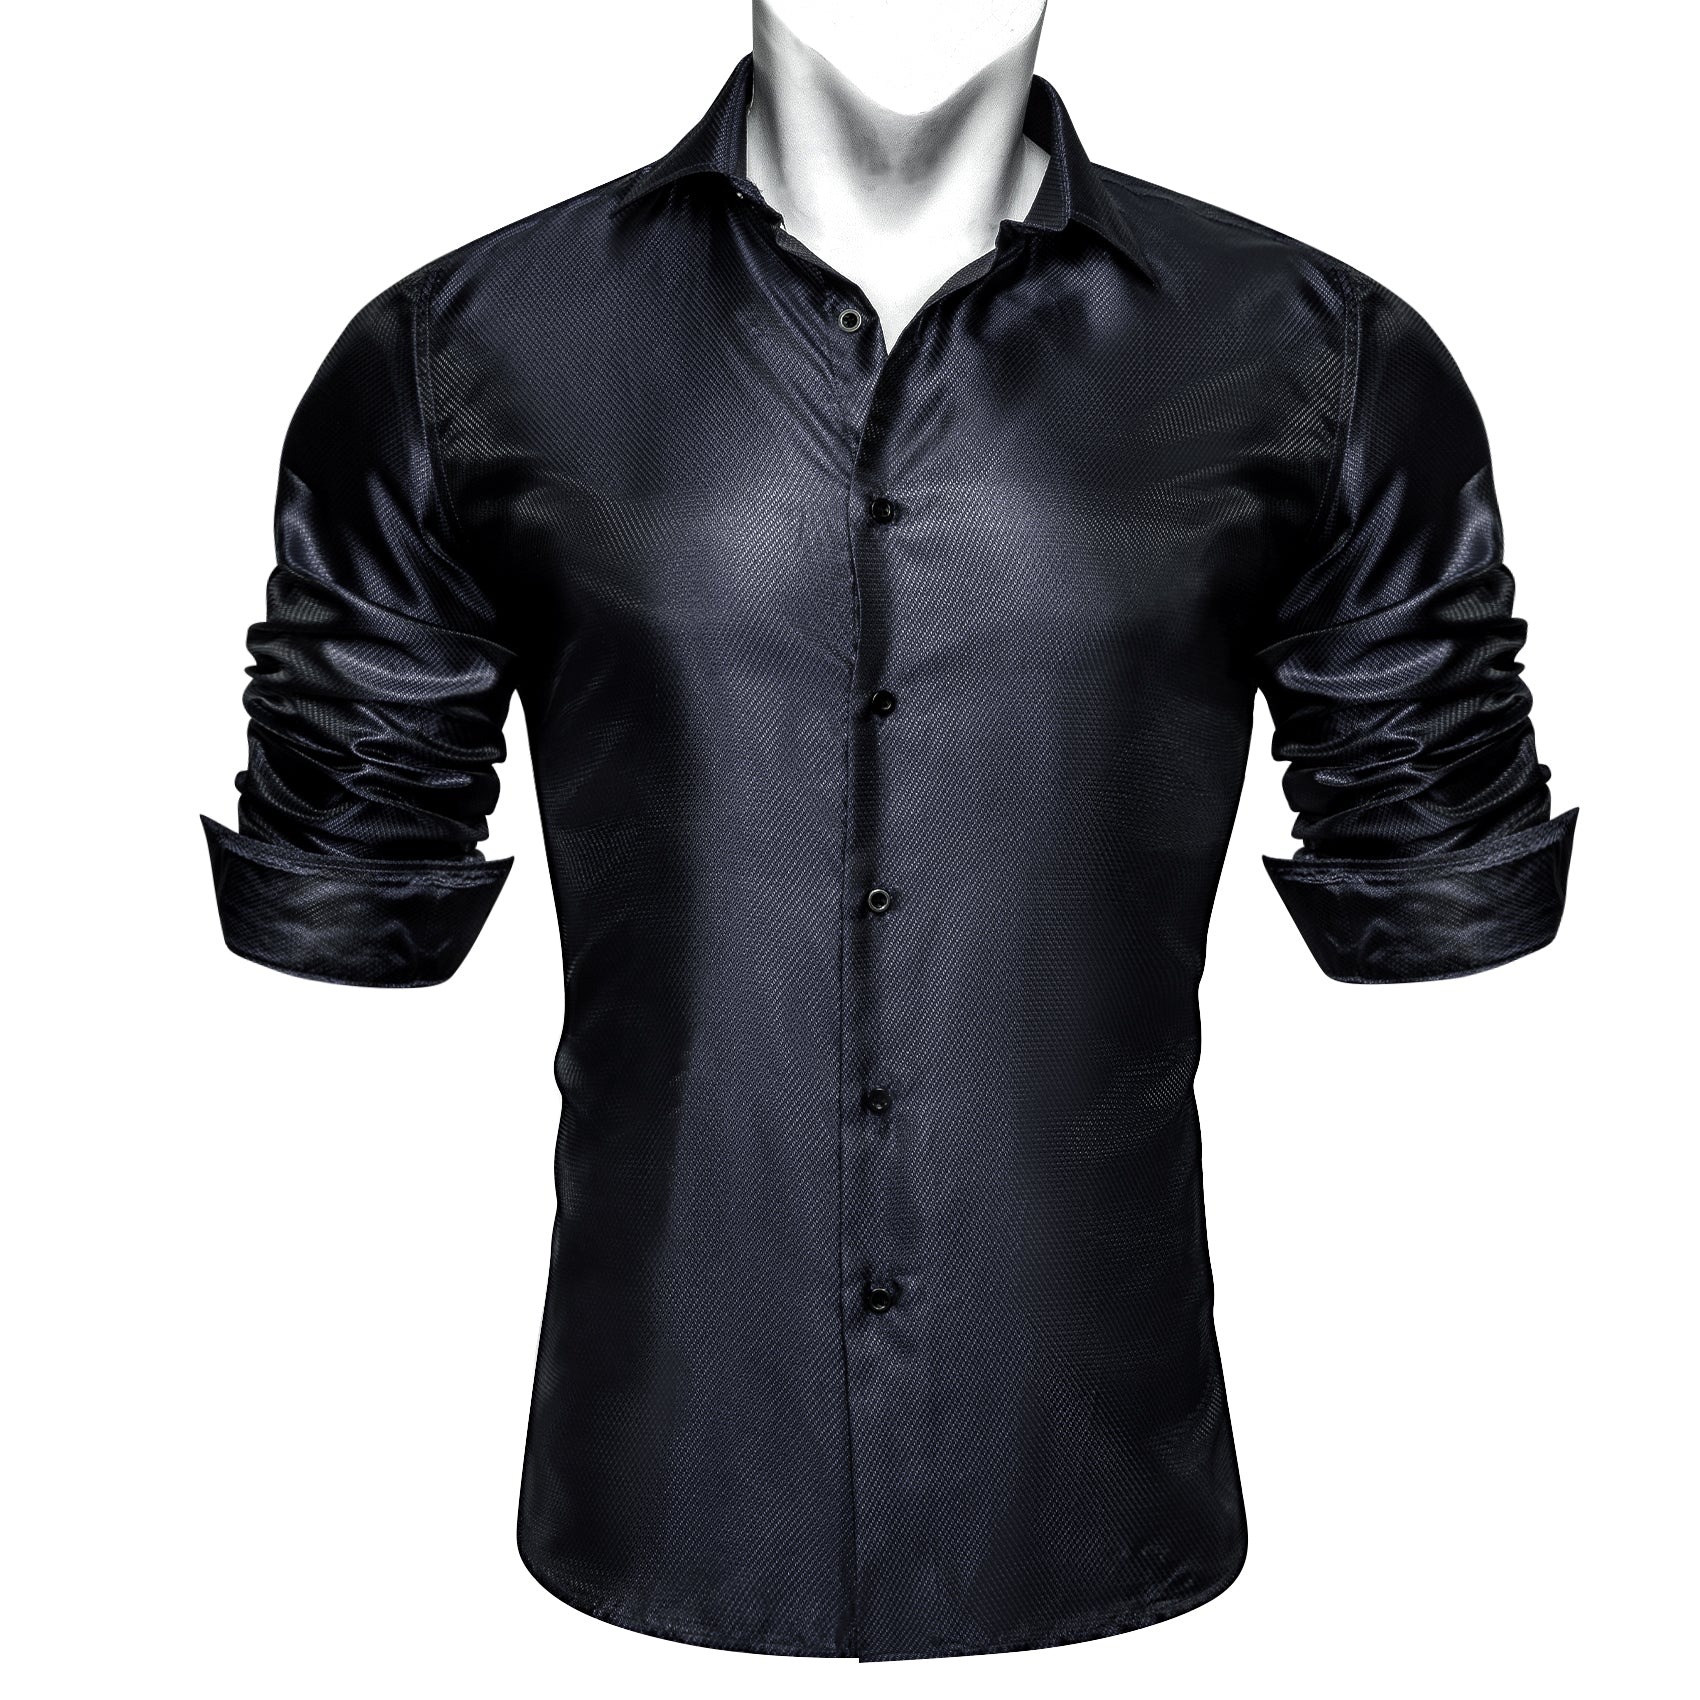 Barry.wang Men's Shirt Silk Black Blue Solid Button Up Dress Shirt Daily